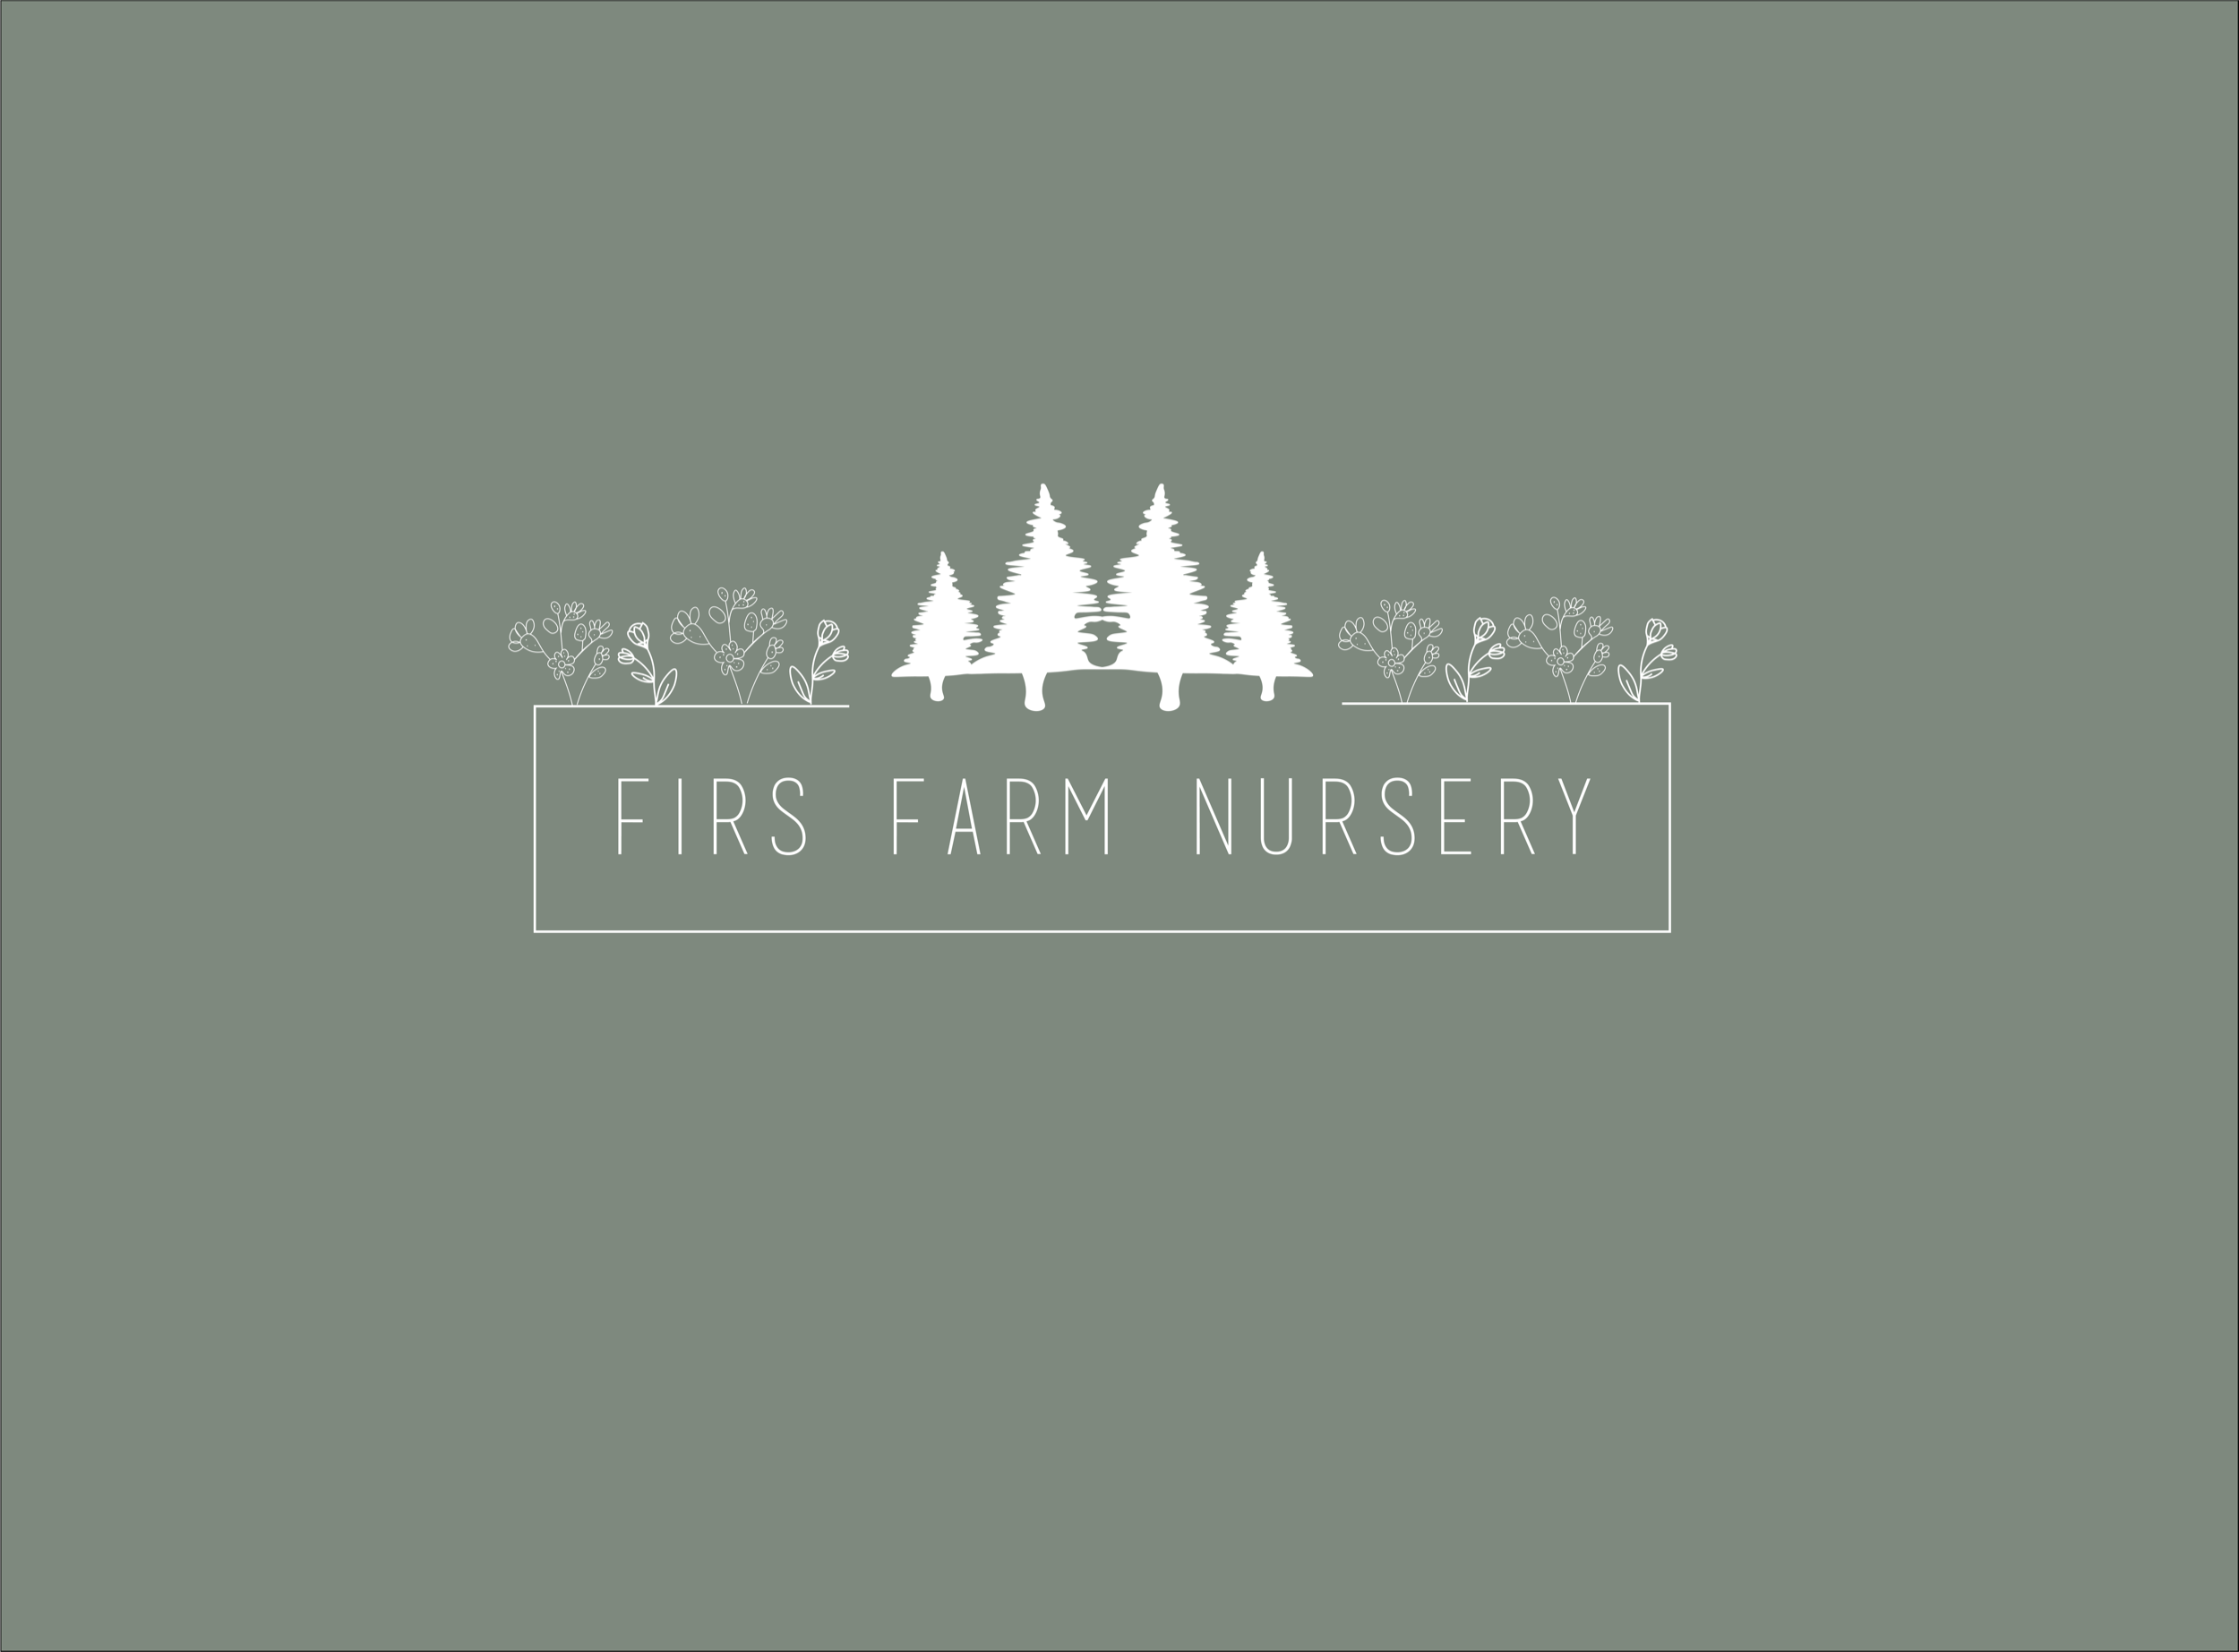 Firs Farm Nursery